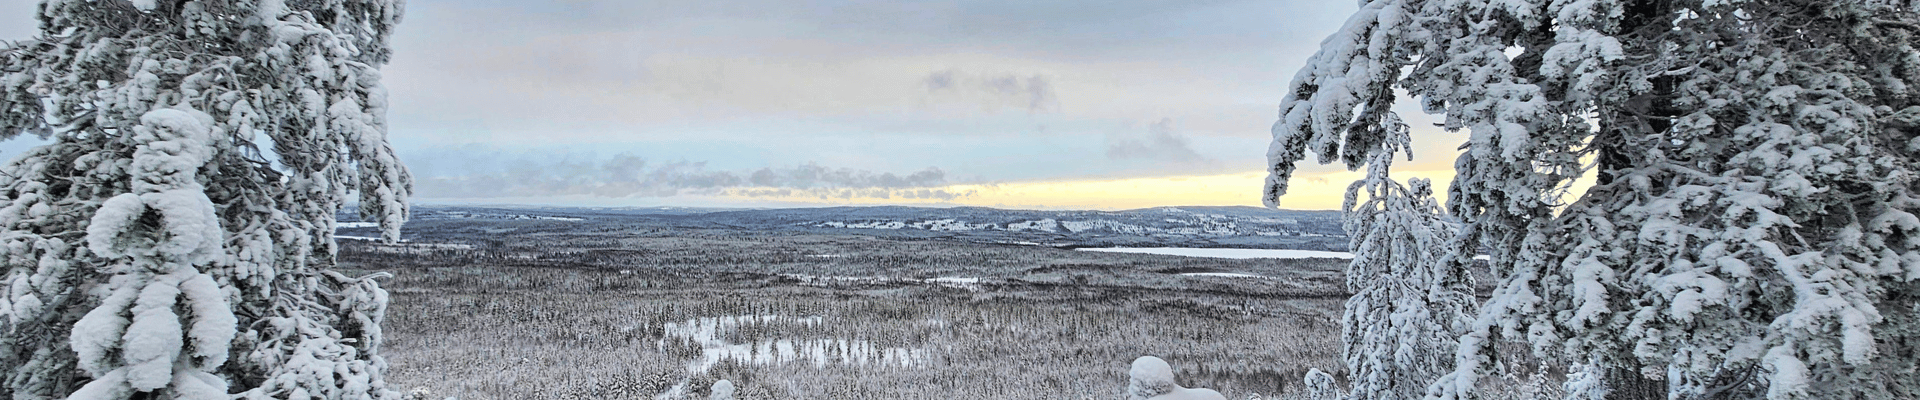 Talvinen maisema vaaran laelta kuvattuna.